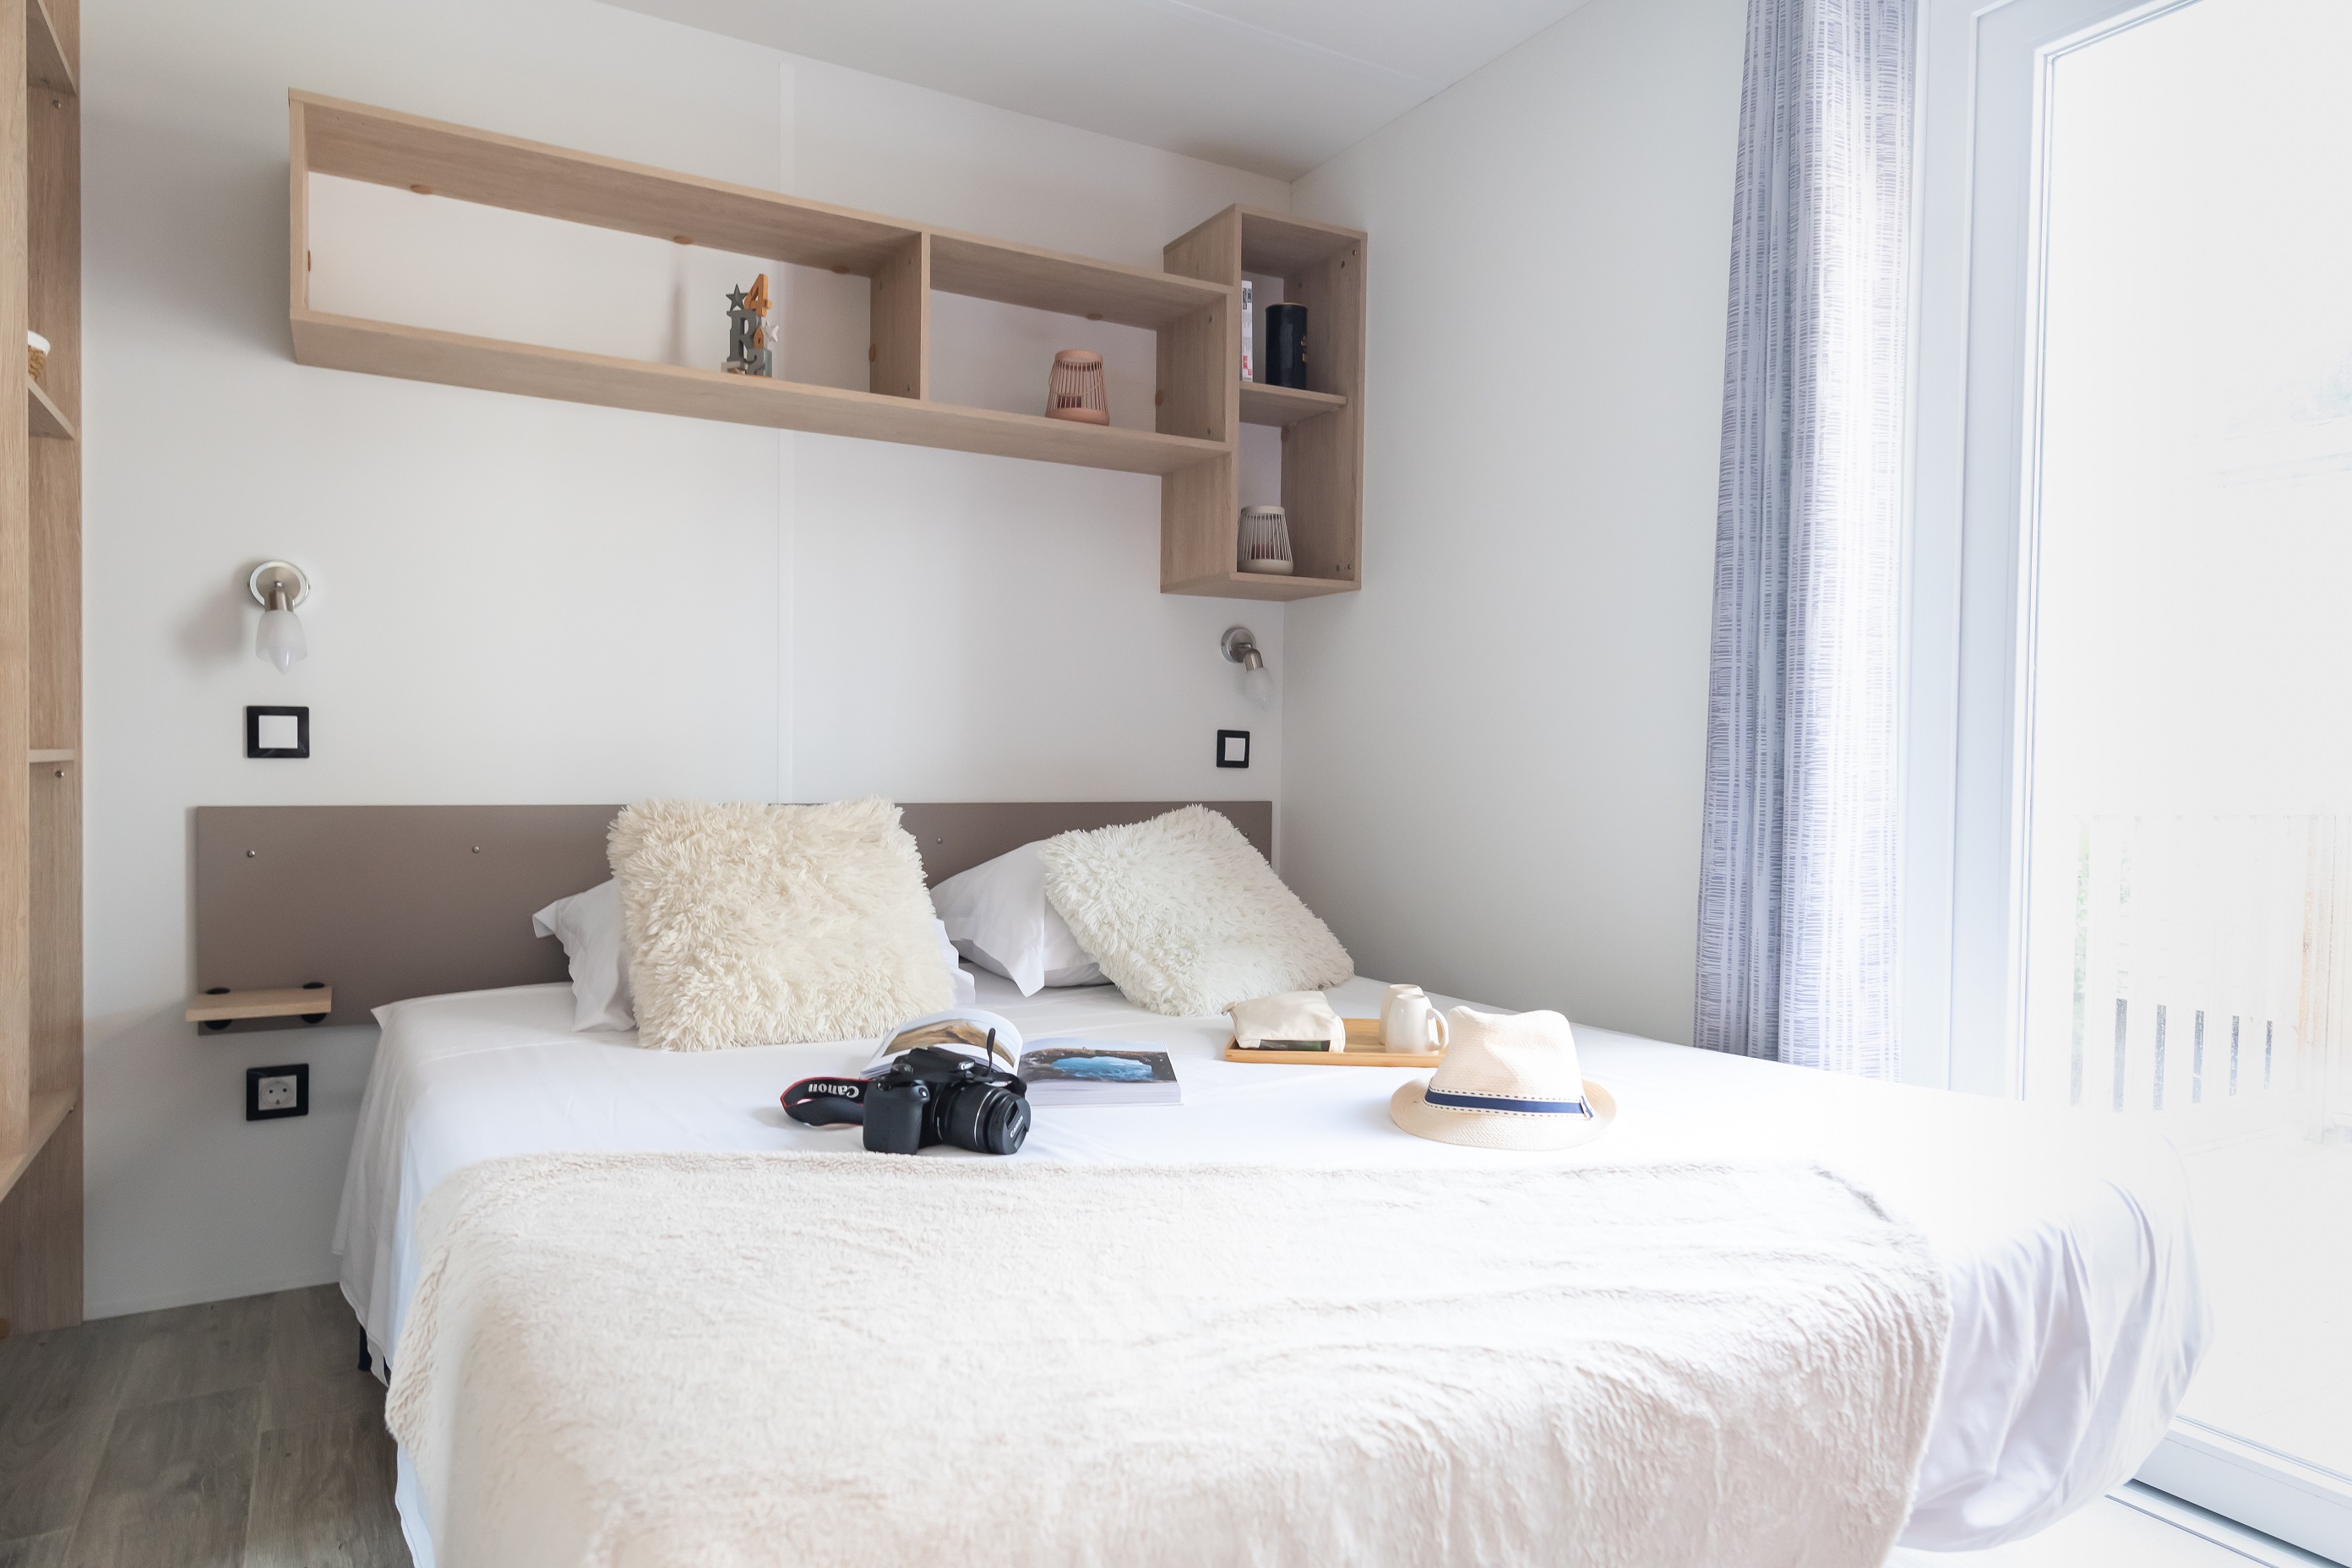 Cottage Prestige 20 m² – 1 bedroom (bedlinen and towels inclued) 1/2 Ppl.